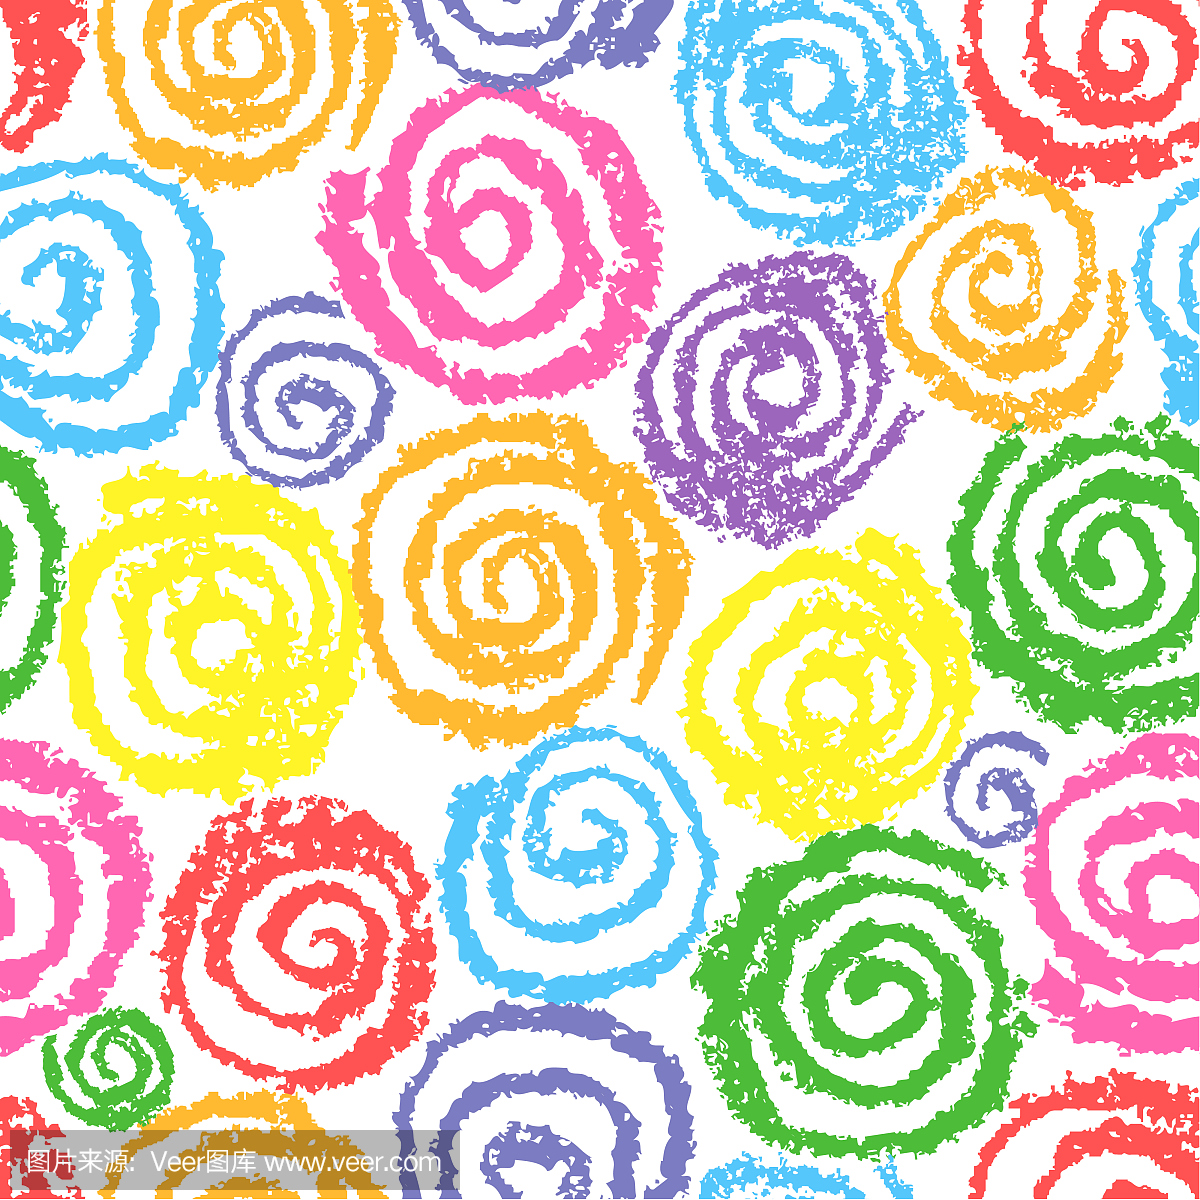 蜡笔彩色手绘螺旋螺旋圈模式。就像孩子们画多